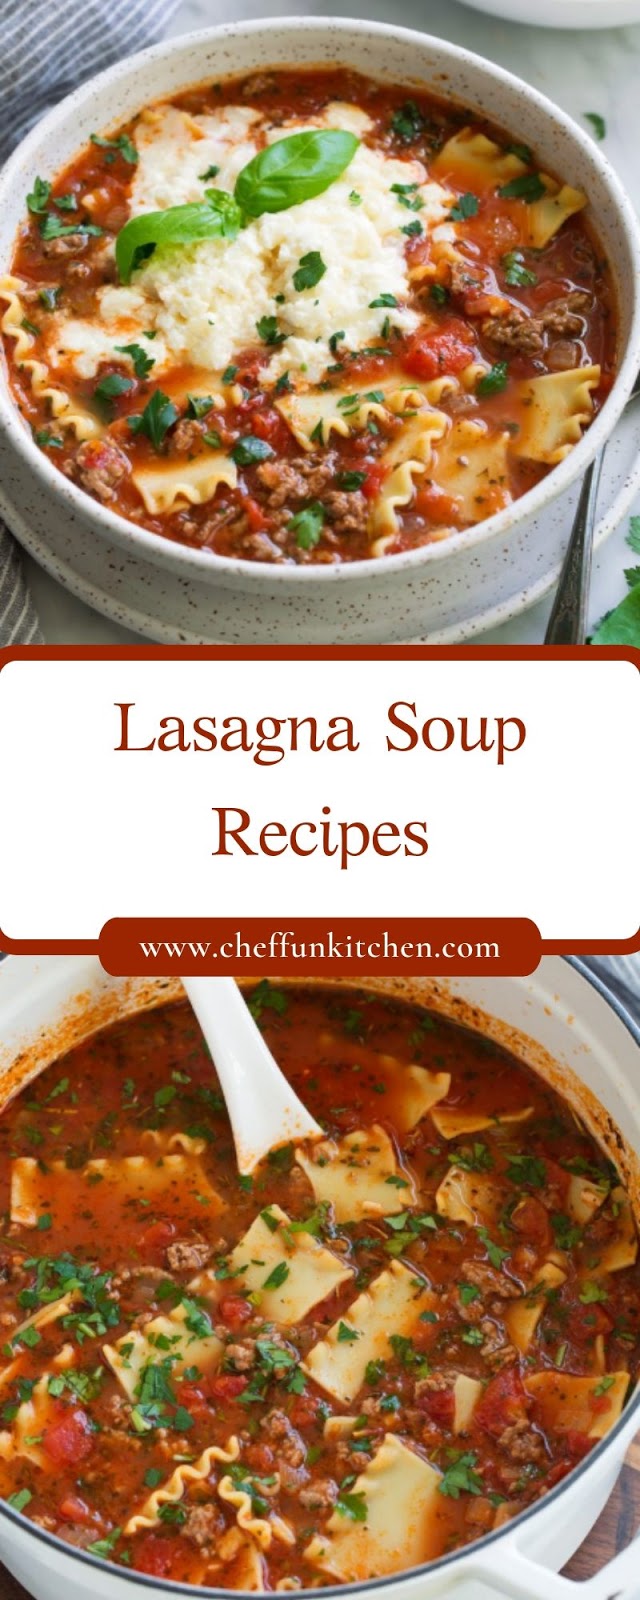 Lasagna Soup Recipes